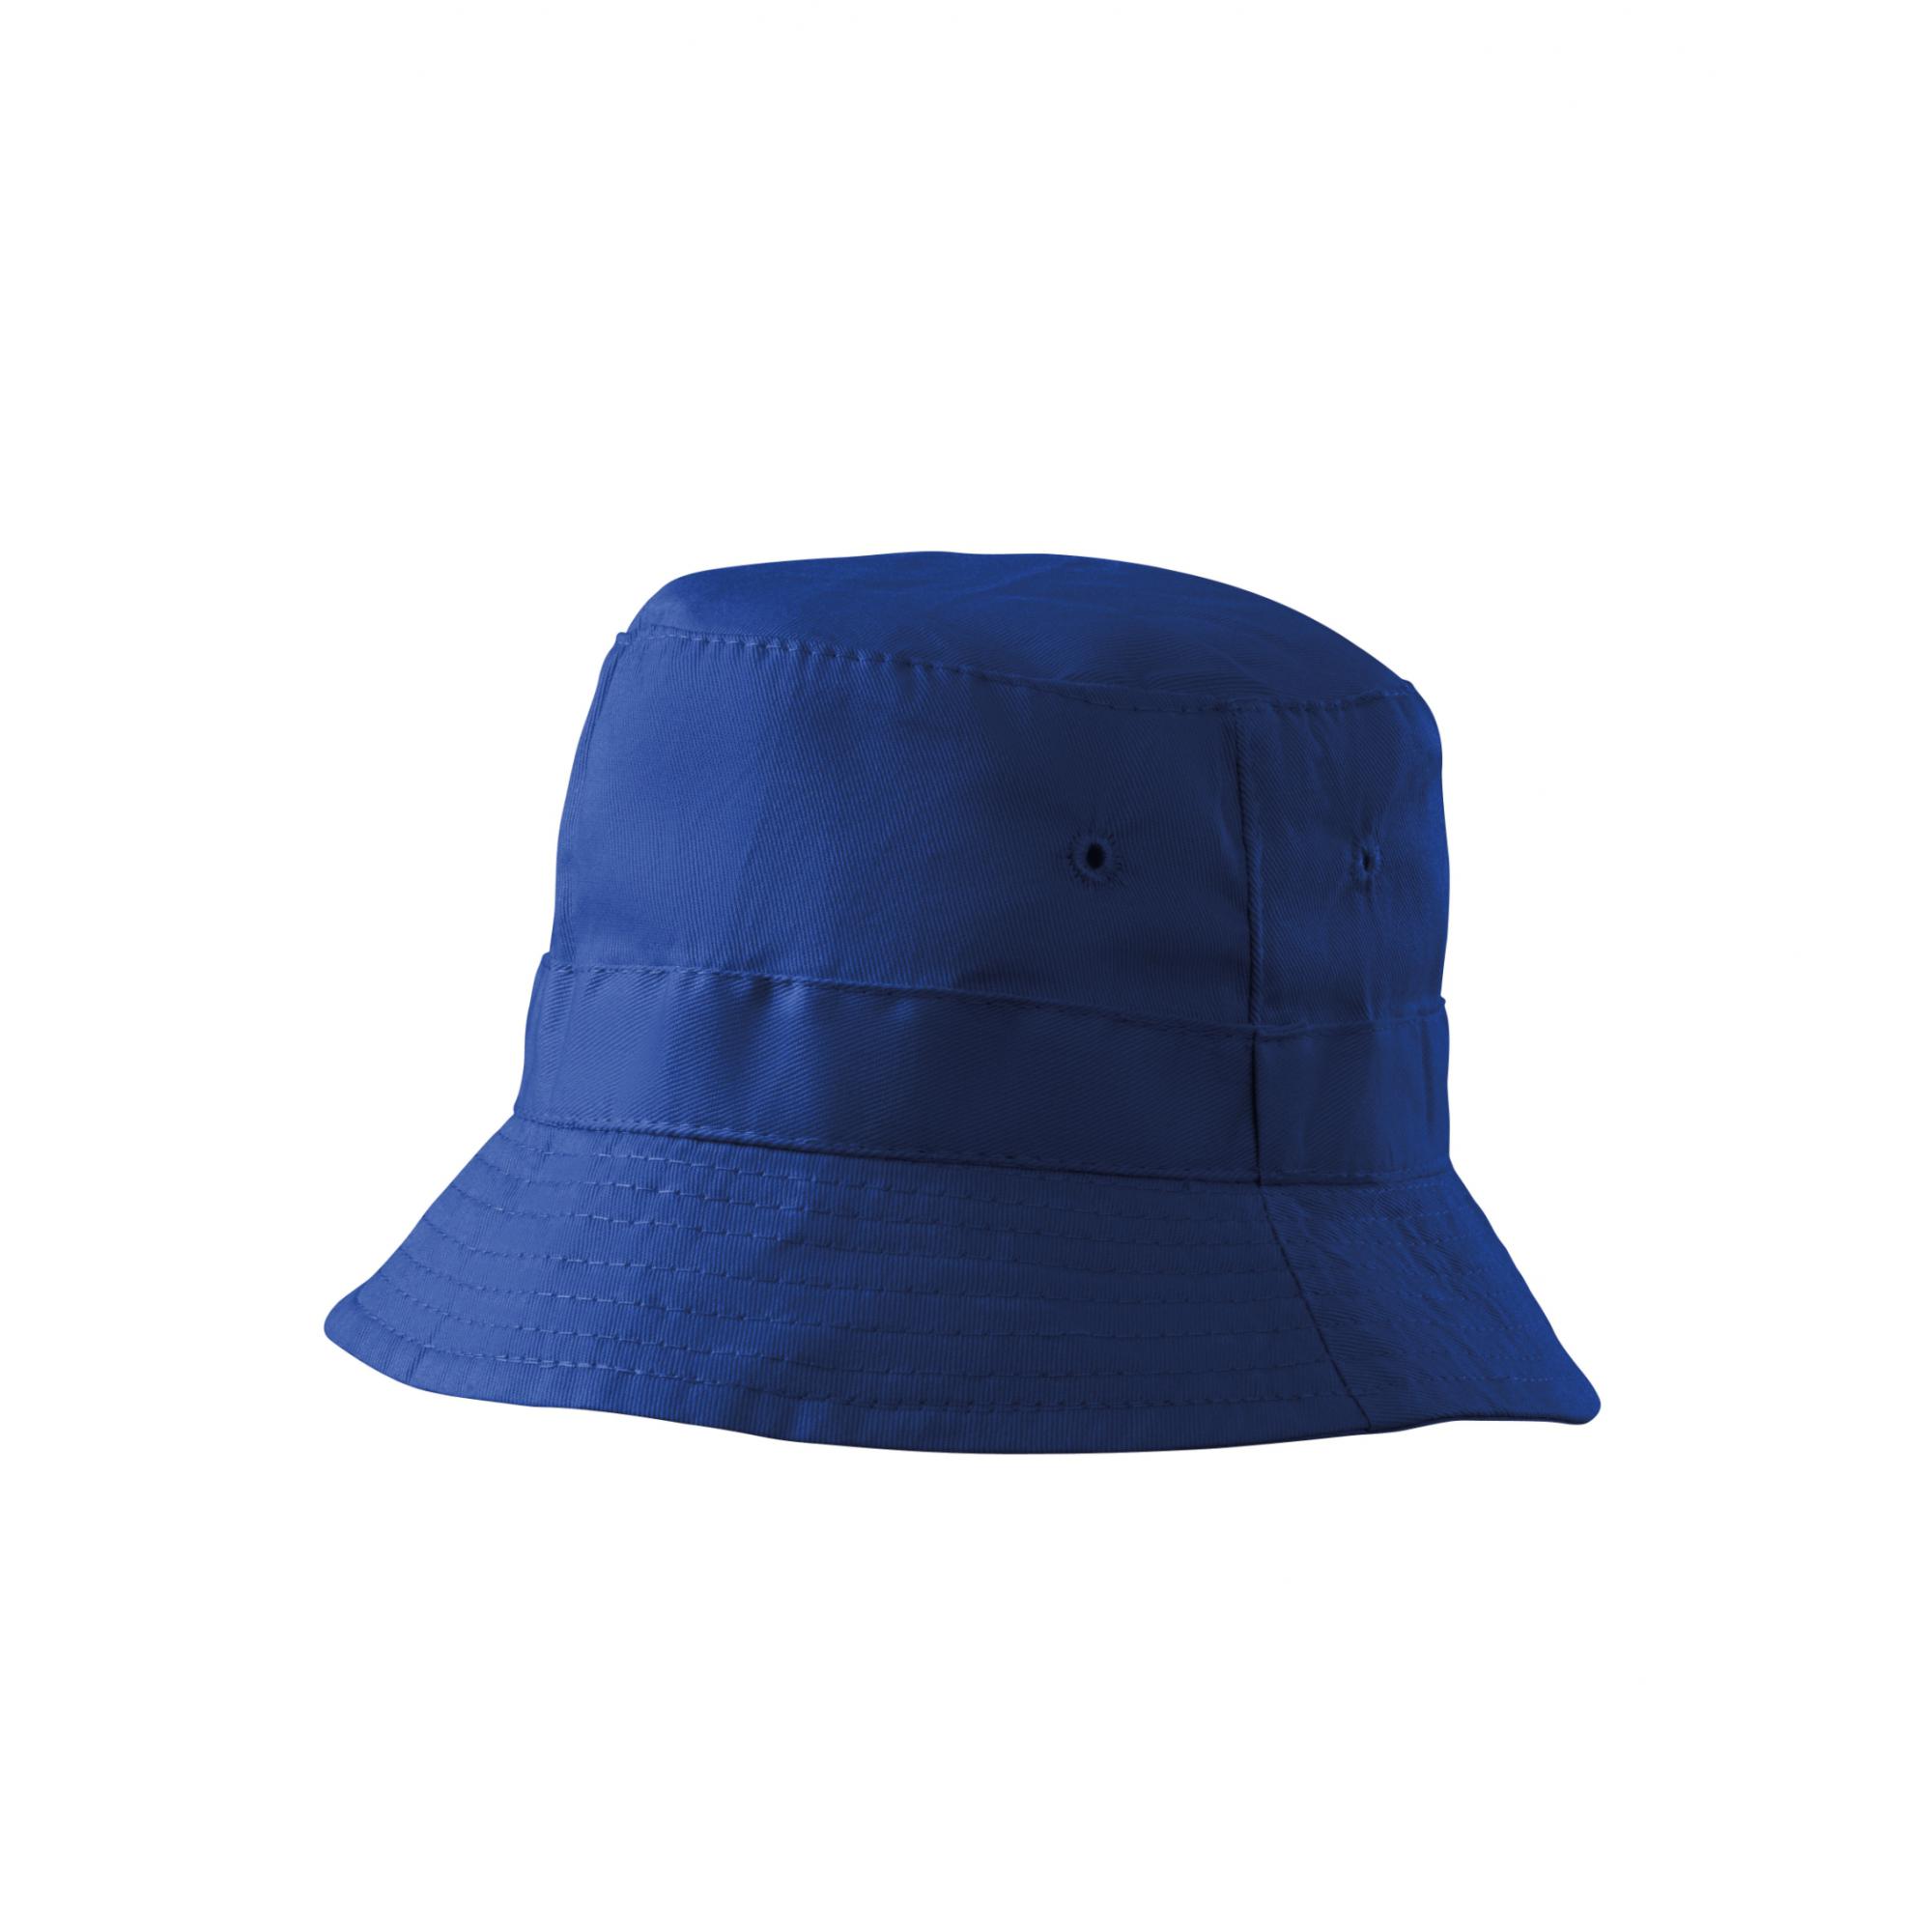 Pălărie unisex Classic 304 Albastru regal Marime universala